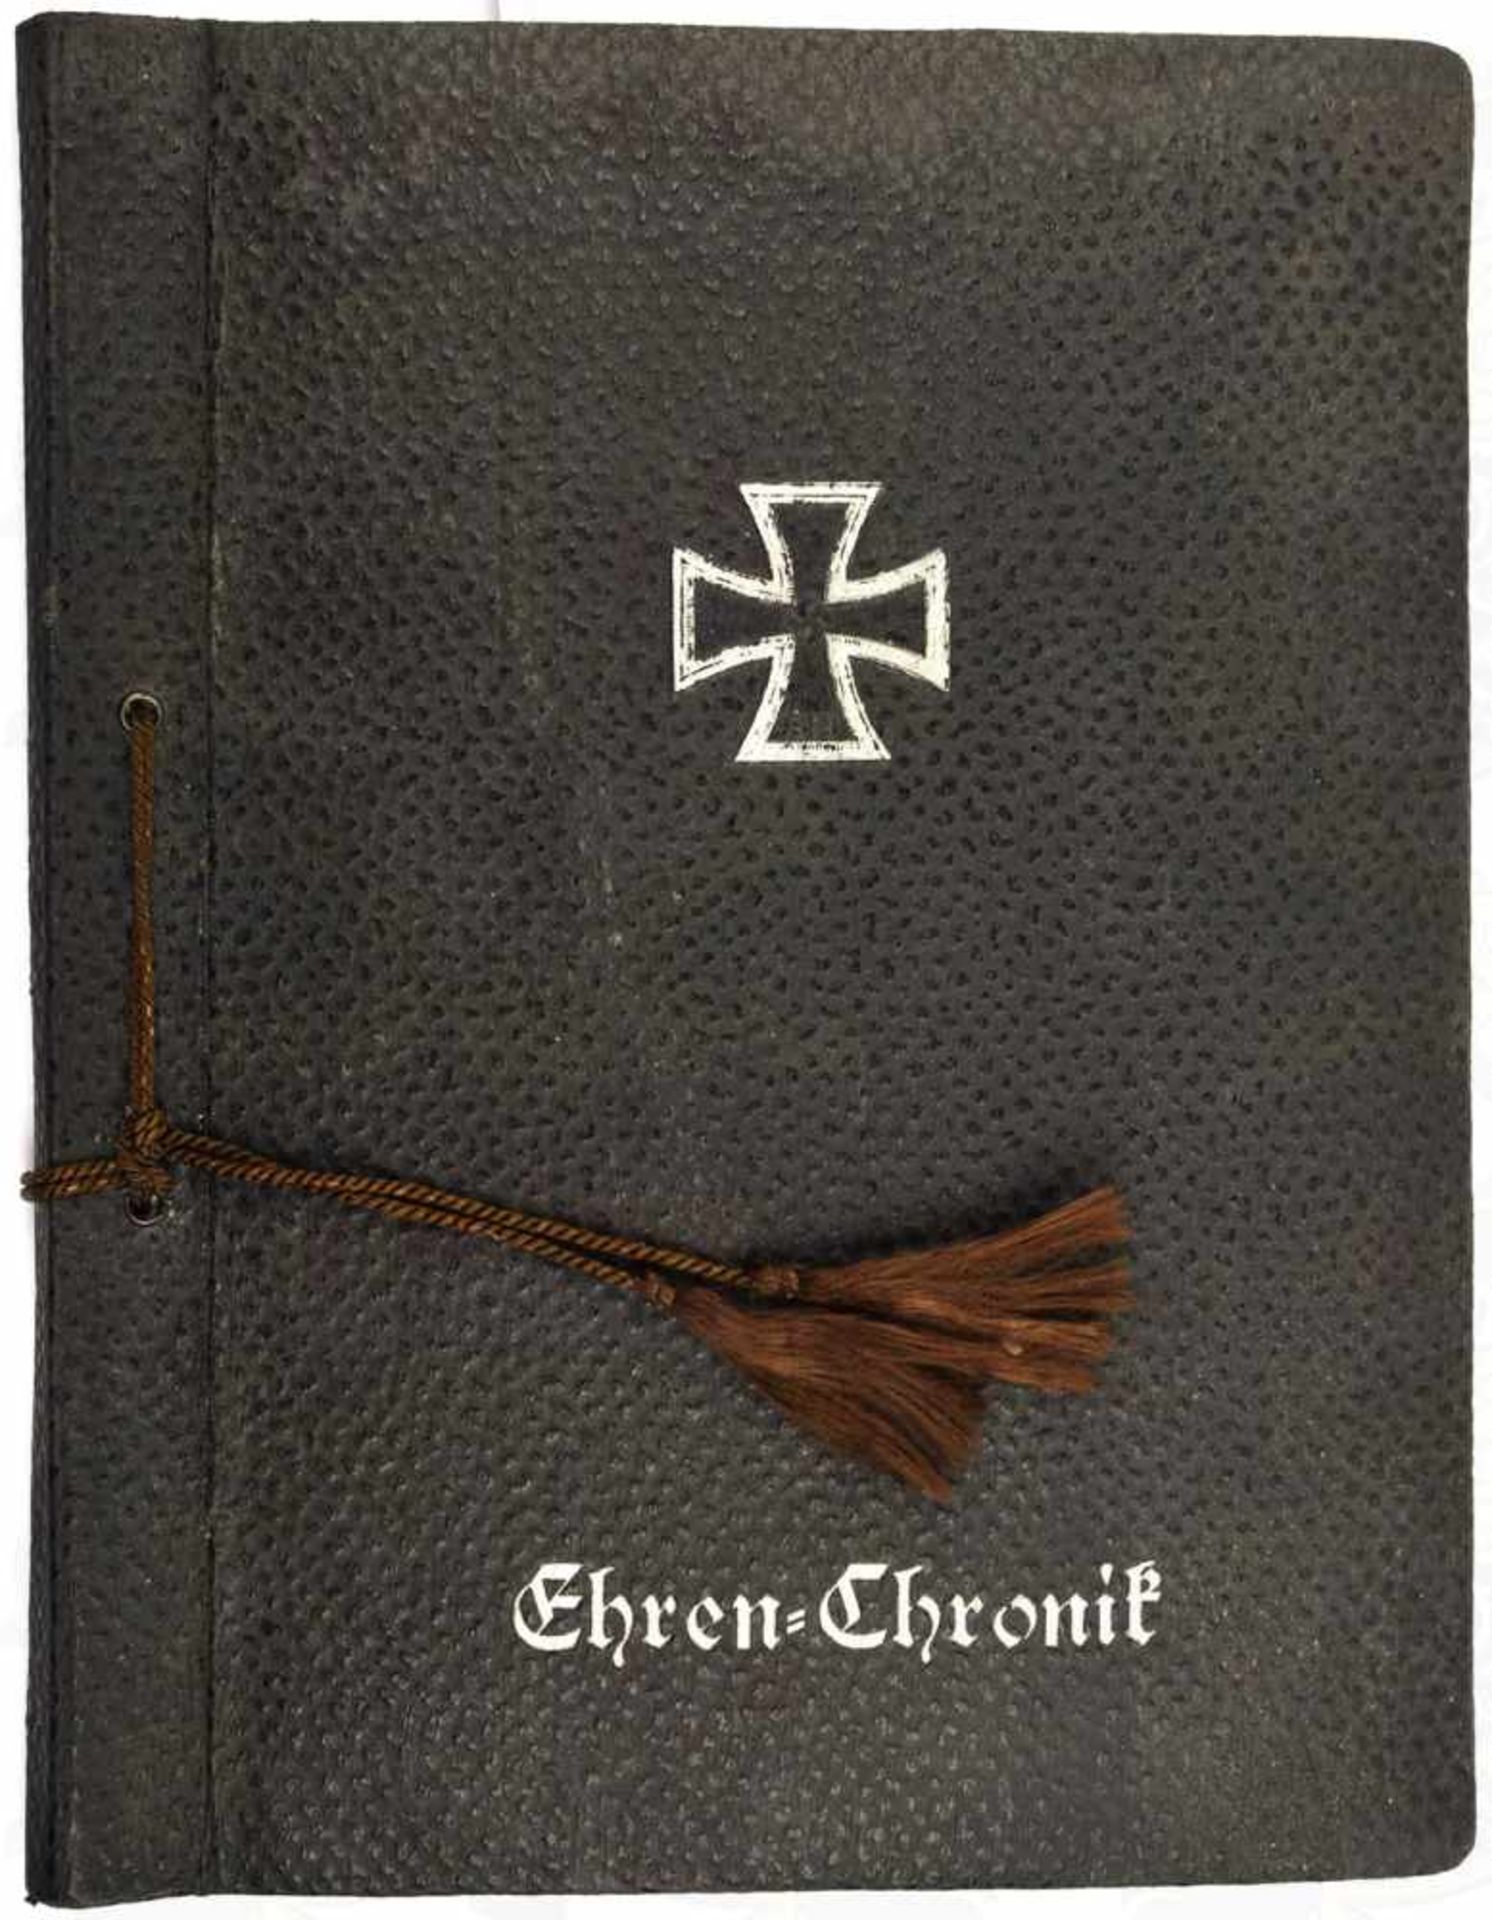 EHREN-CHRONIK, blanko Fotoalbum, m. Textvordrucken u. Bildteil zur Wehrmacht, u.a. Funktruppen im